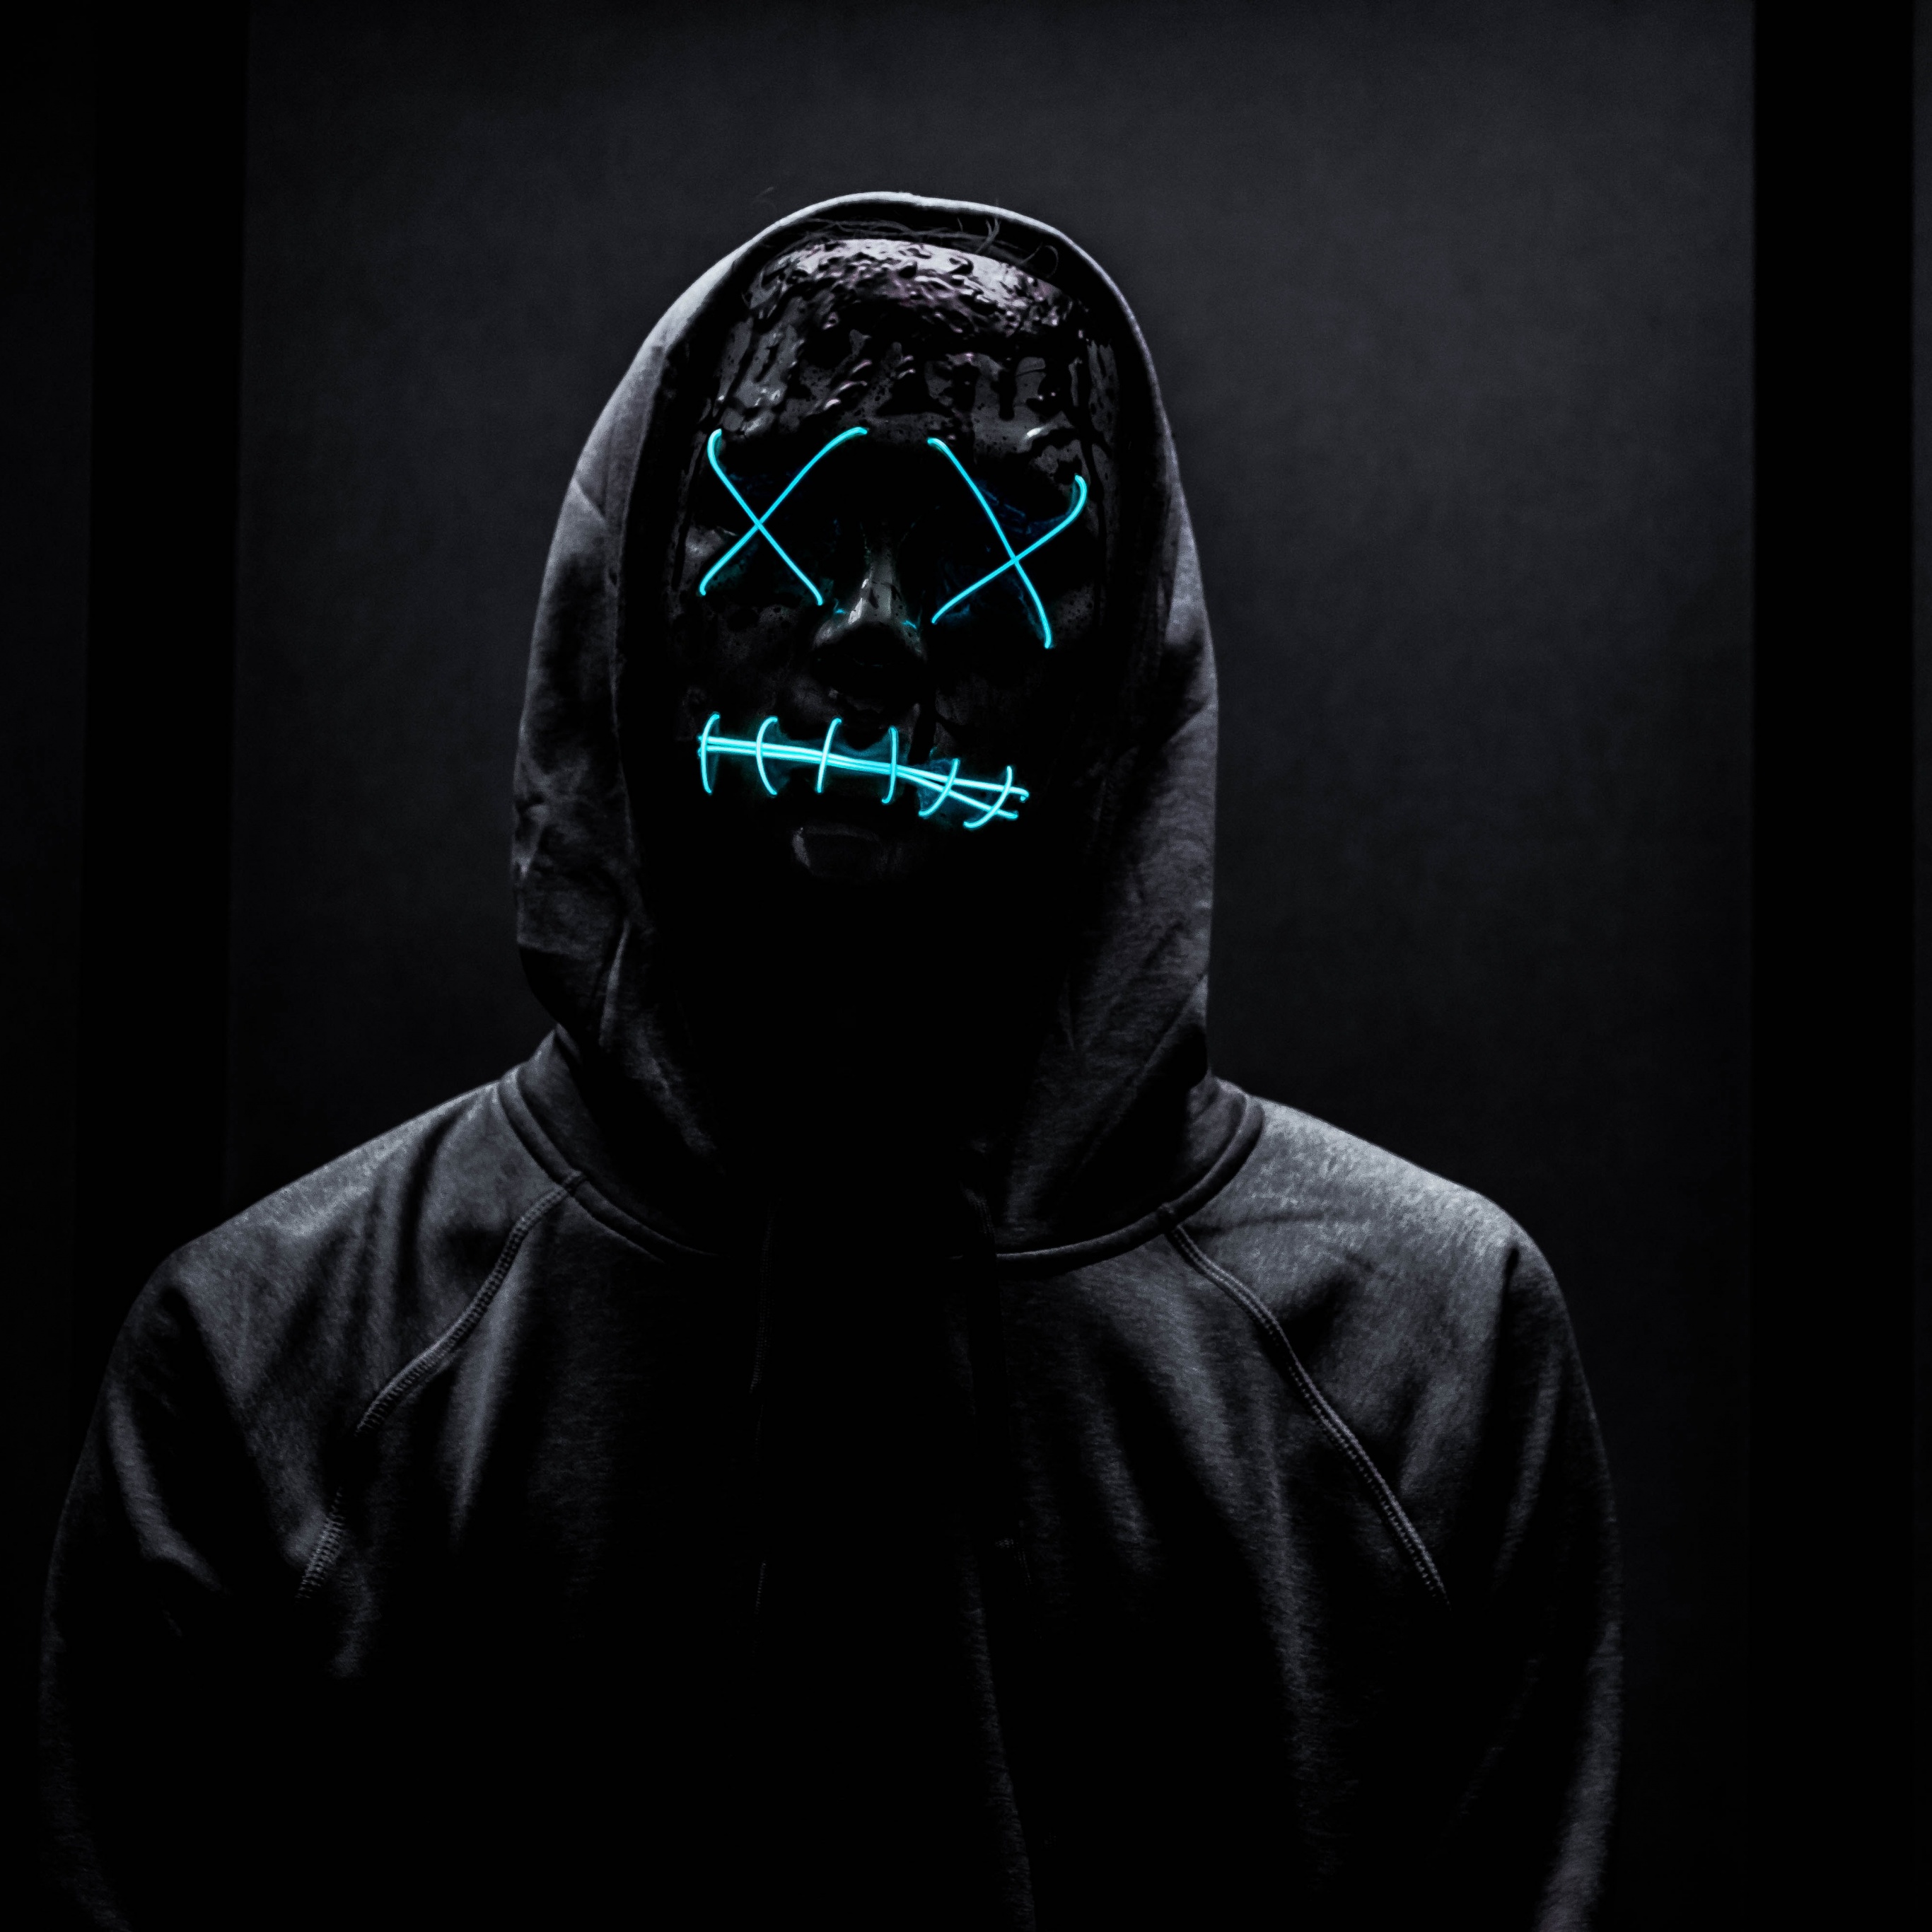 alimentar Darse prisa Subdividir Neon Mask Wallpaper 4K, Man in Black, Dark background, #2162